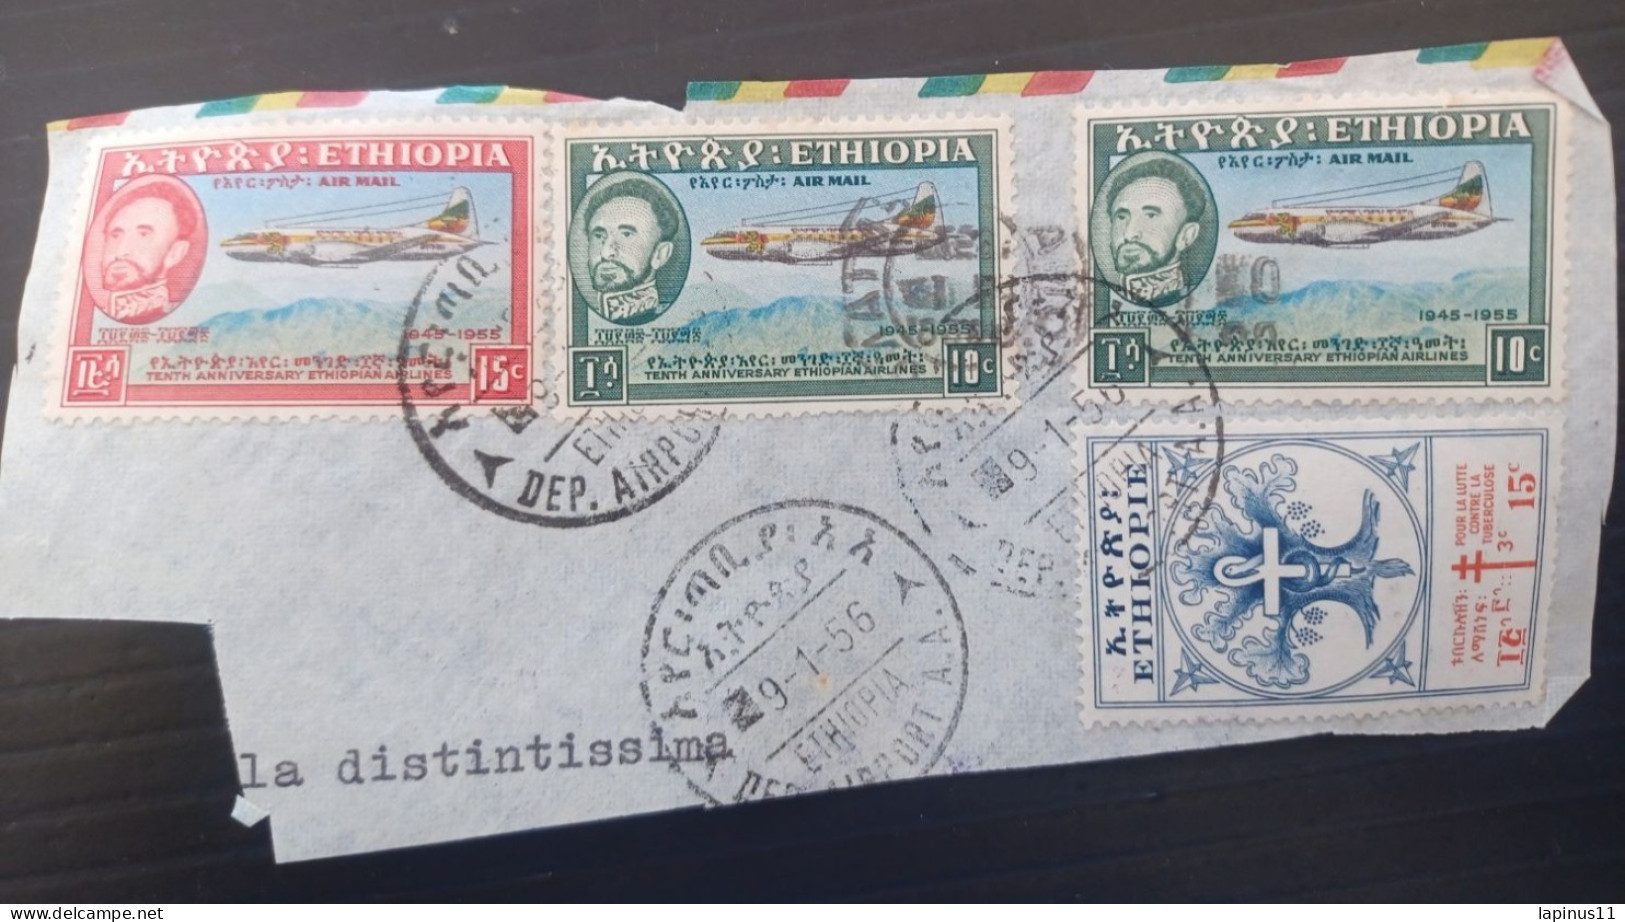 ETIOPIA 1956 AIRMAILYVERT N 304 LUTTE CONTRE LA TUBERCULOSE N 35-36 AIRMAIL FRAGMANT - Ethiopie